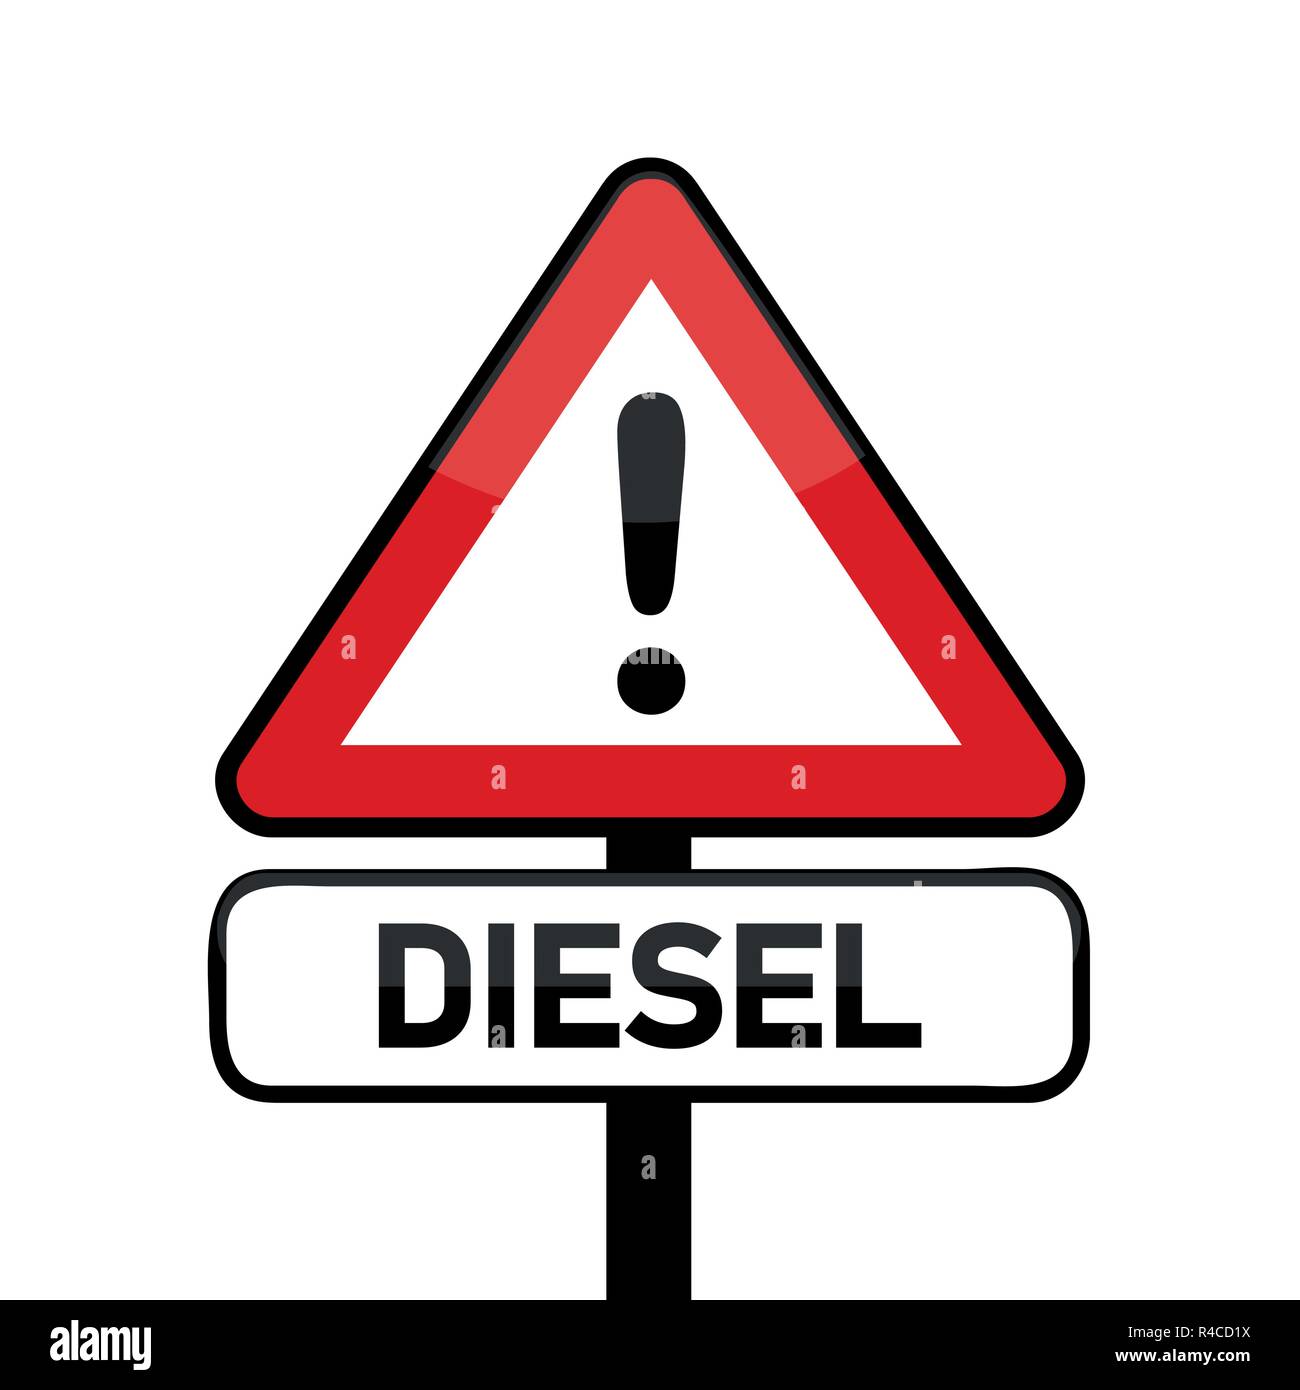 red traffic sign warning diesel emission scandal vector illustration EPS10 Stock Vector